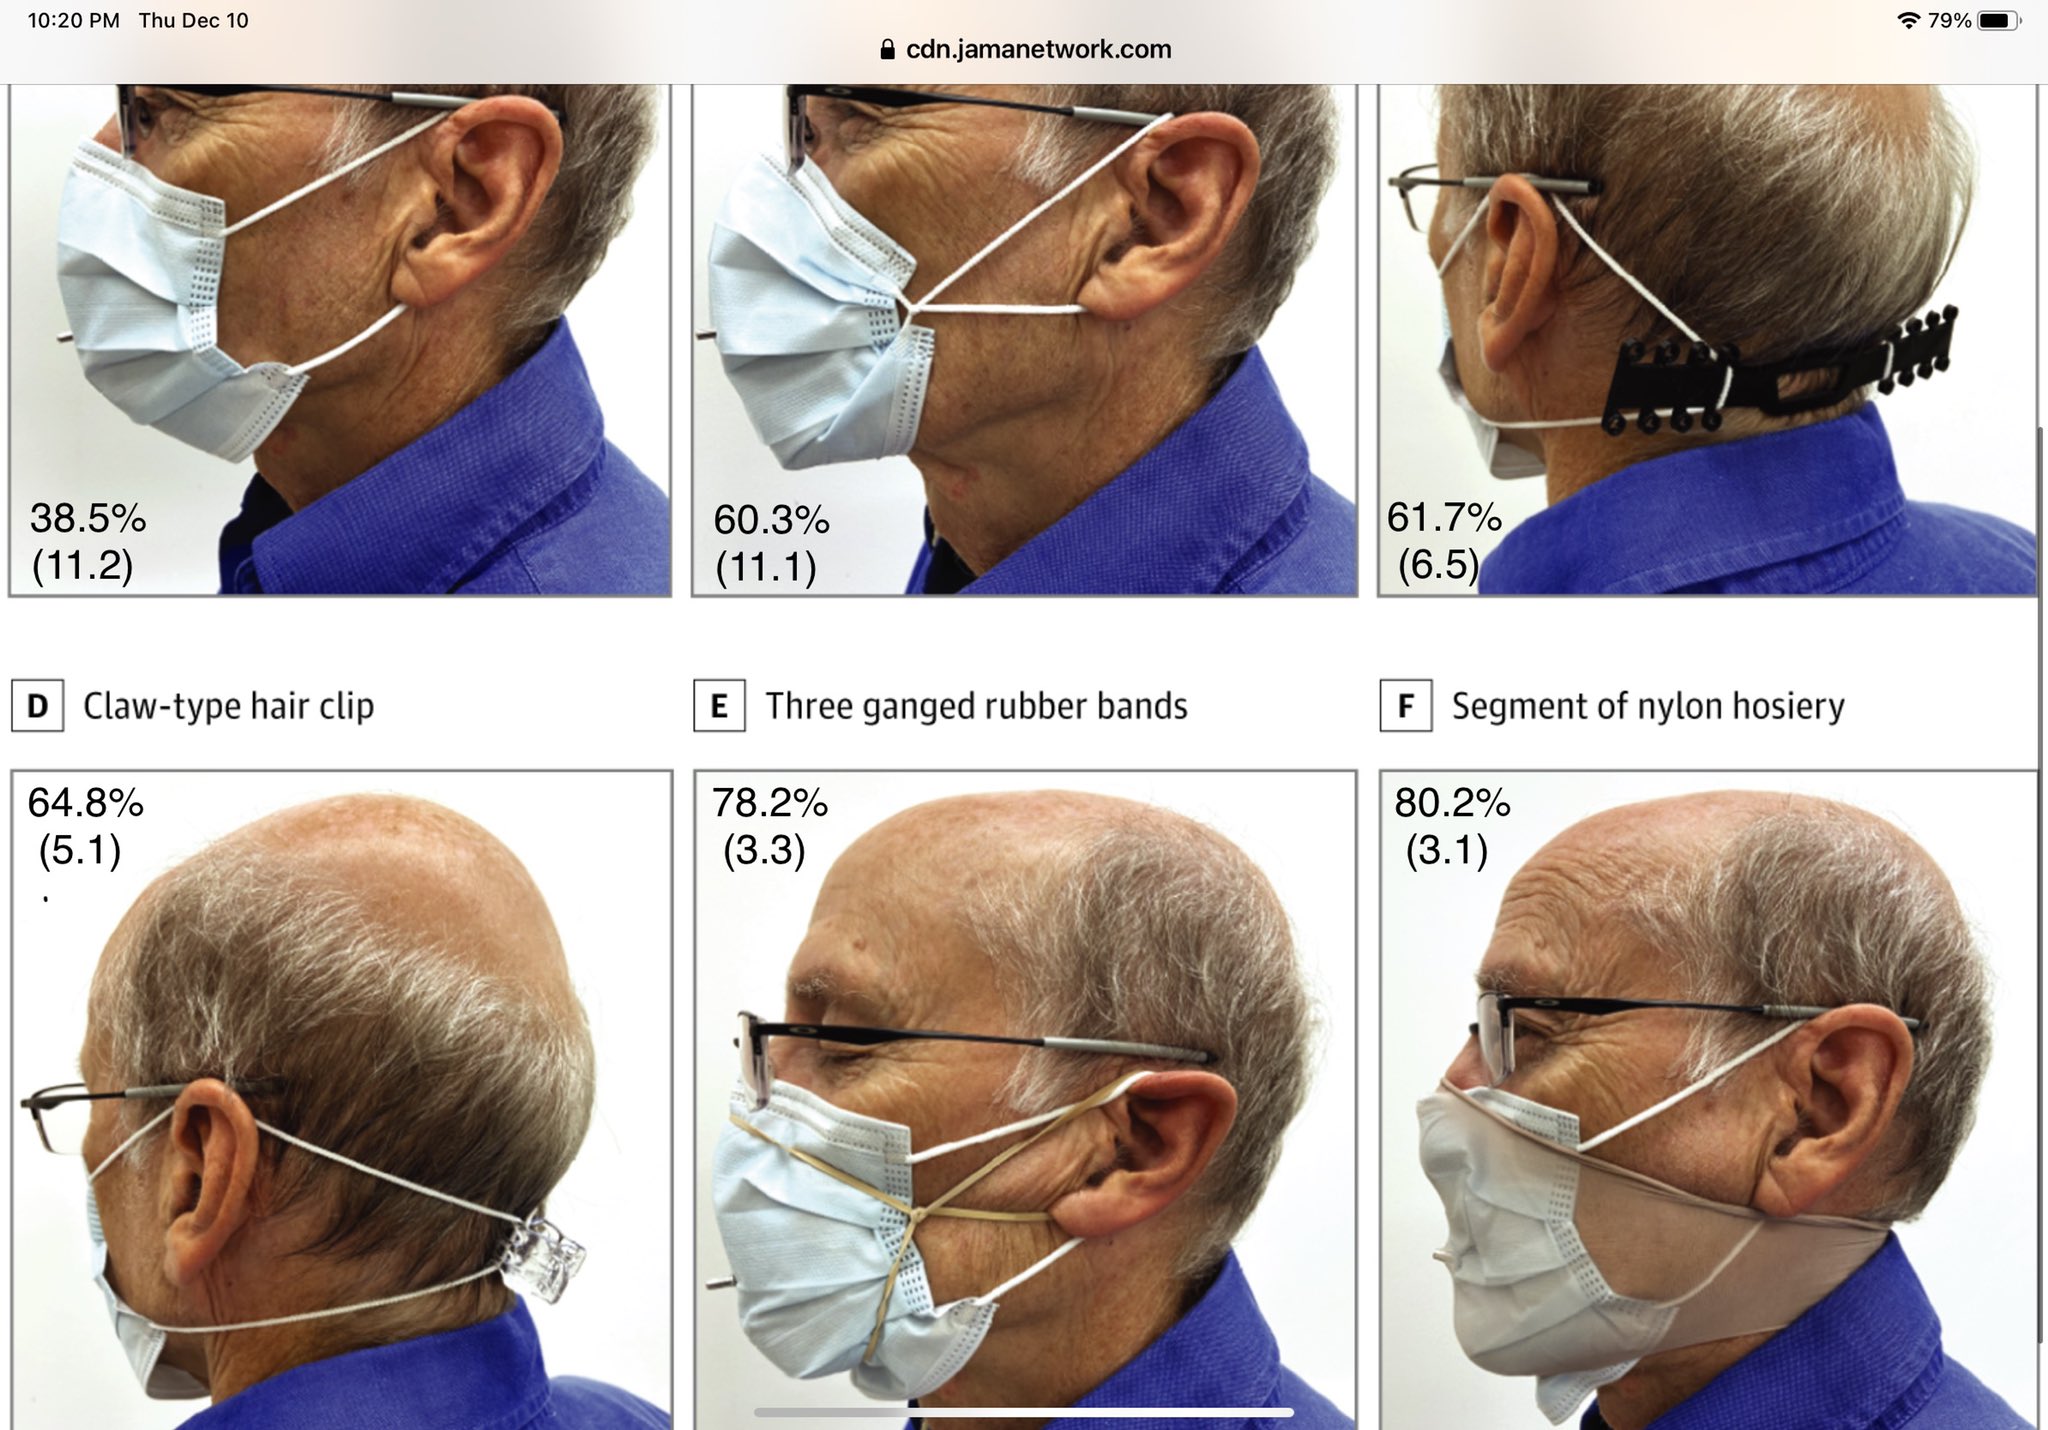 Máscara de visera anti-gotas Anti-vaho Anti-polvo Protección facial  protector cabeza boca nariz covid-19